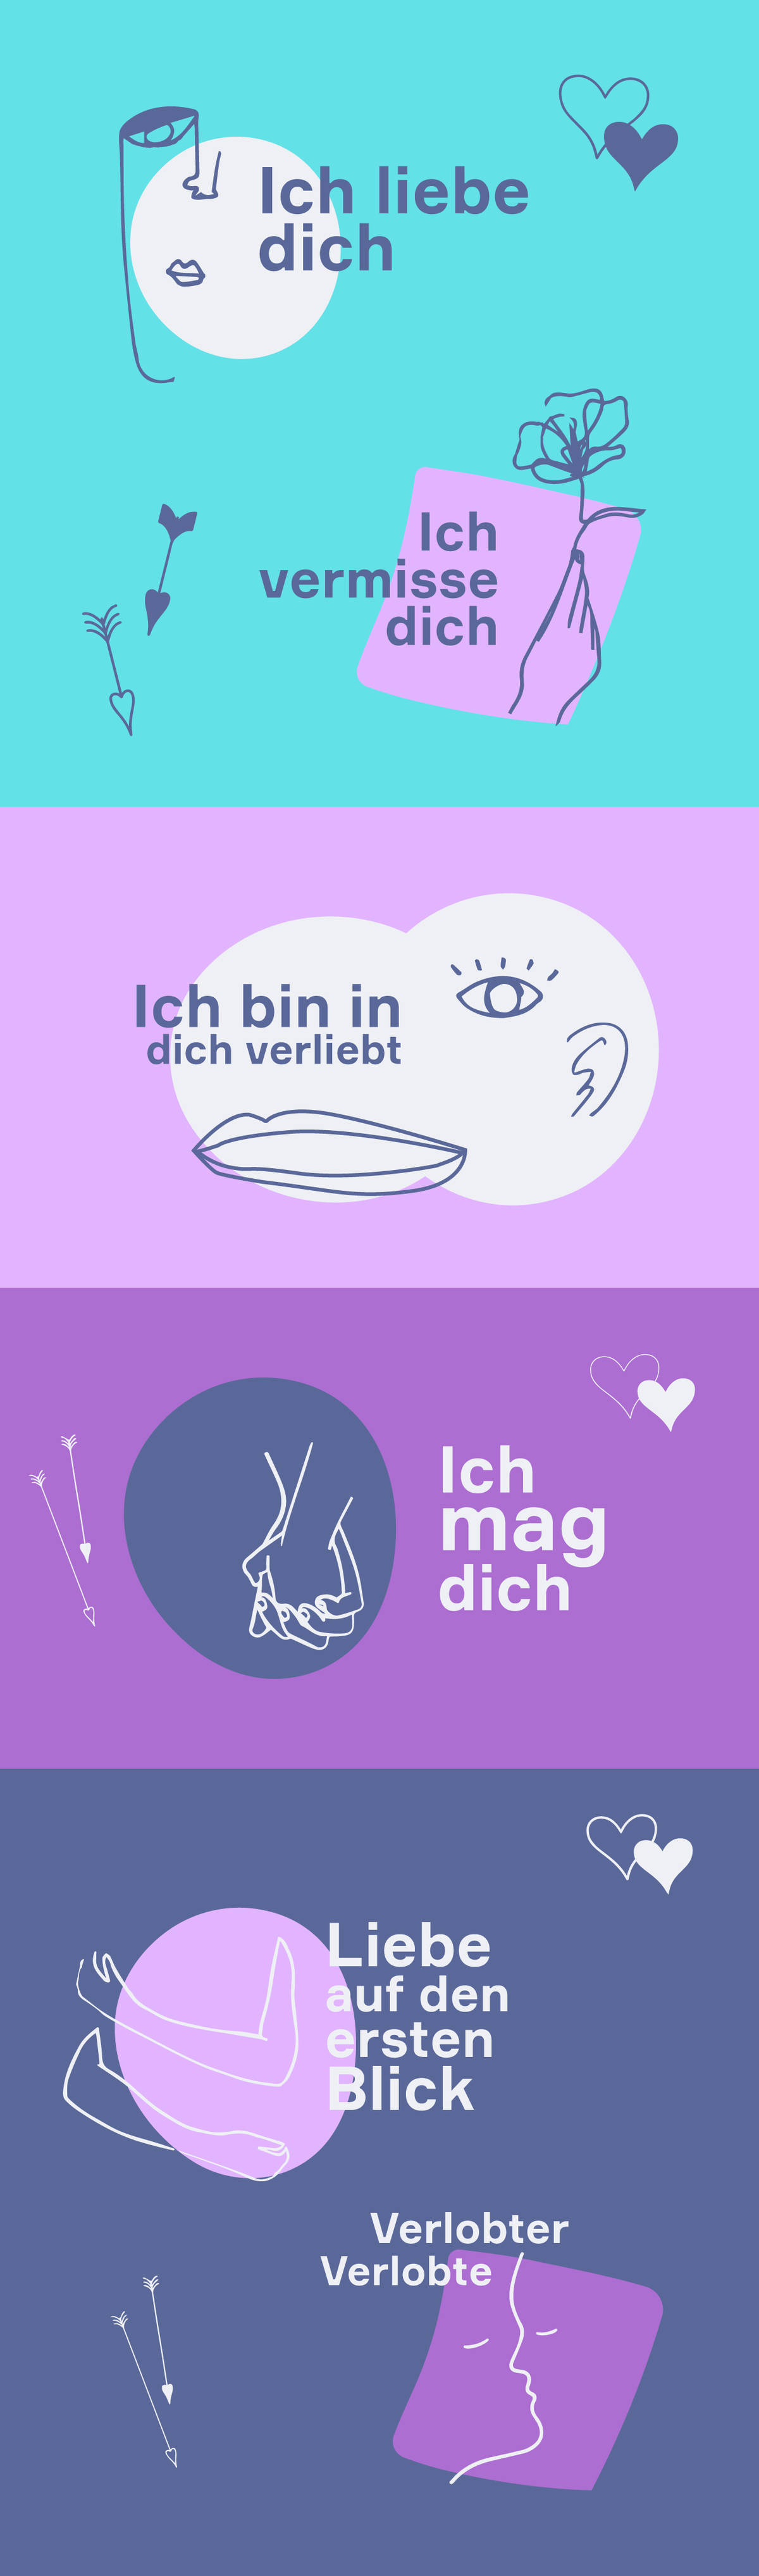 German-love-poster